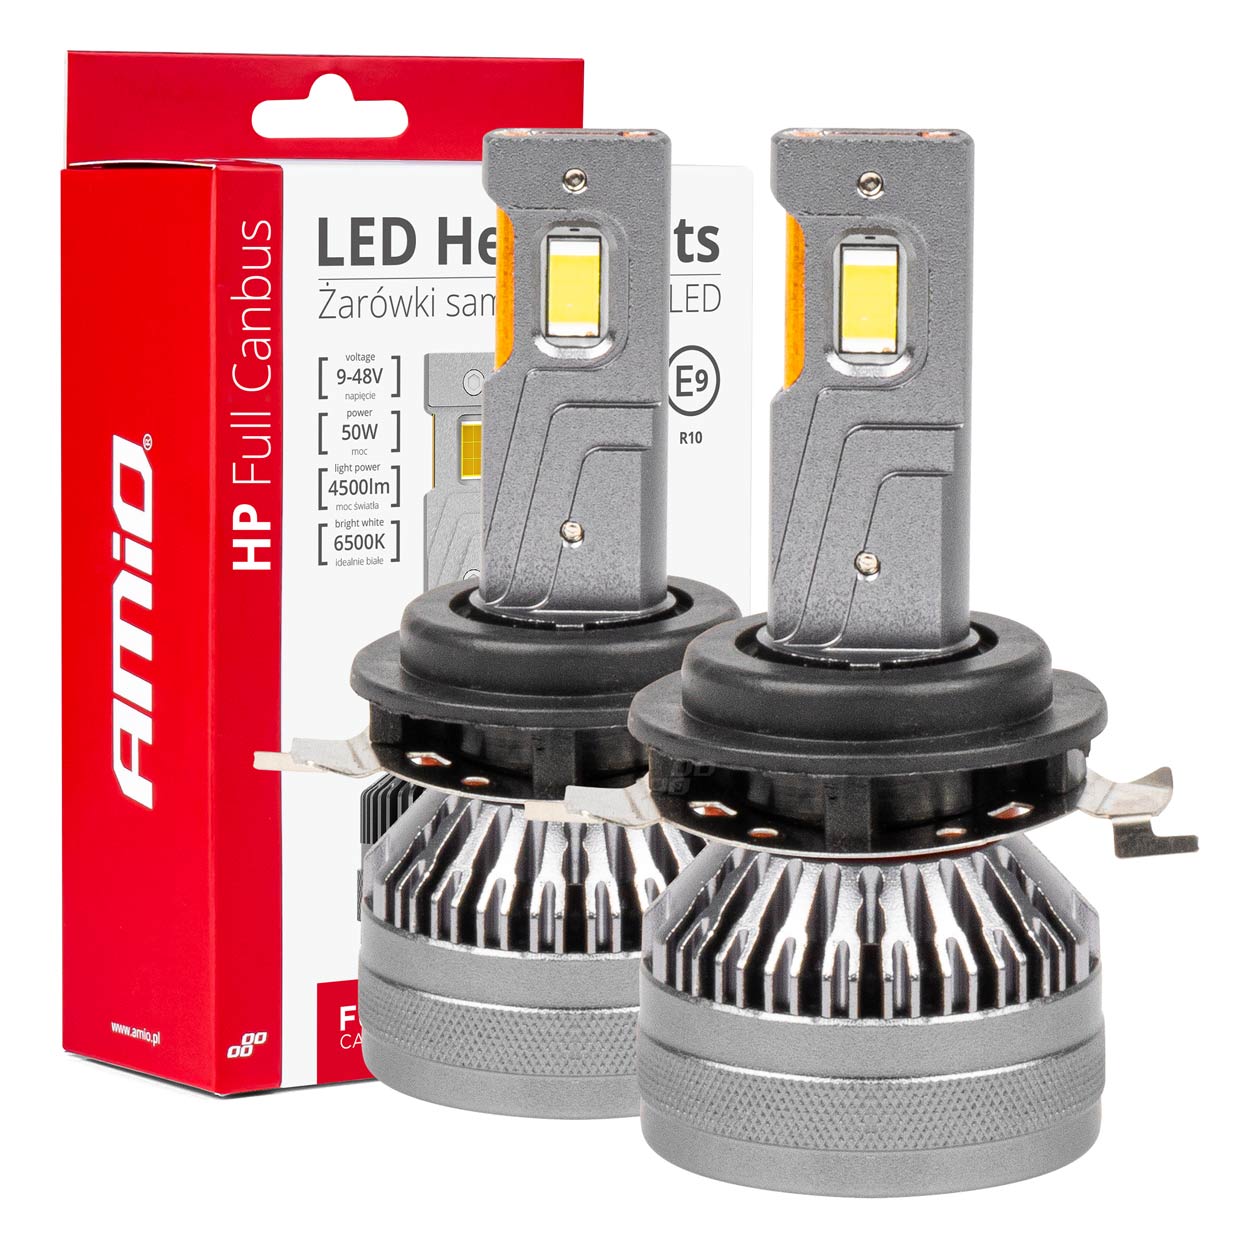 LED žárovky hlavního svícení HP Série H7-1 Full Canbus AMiO-03675